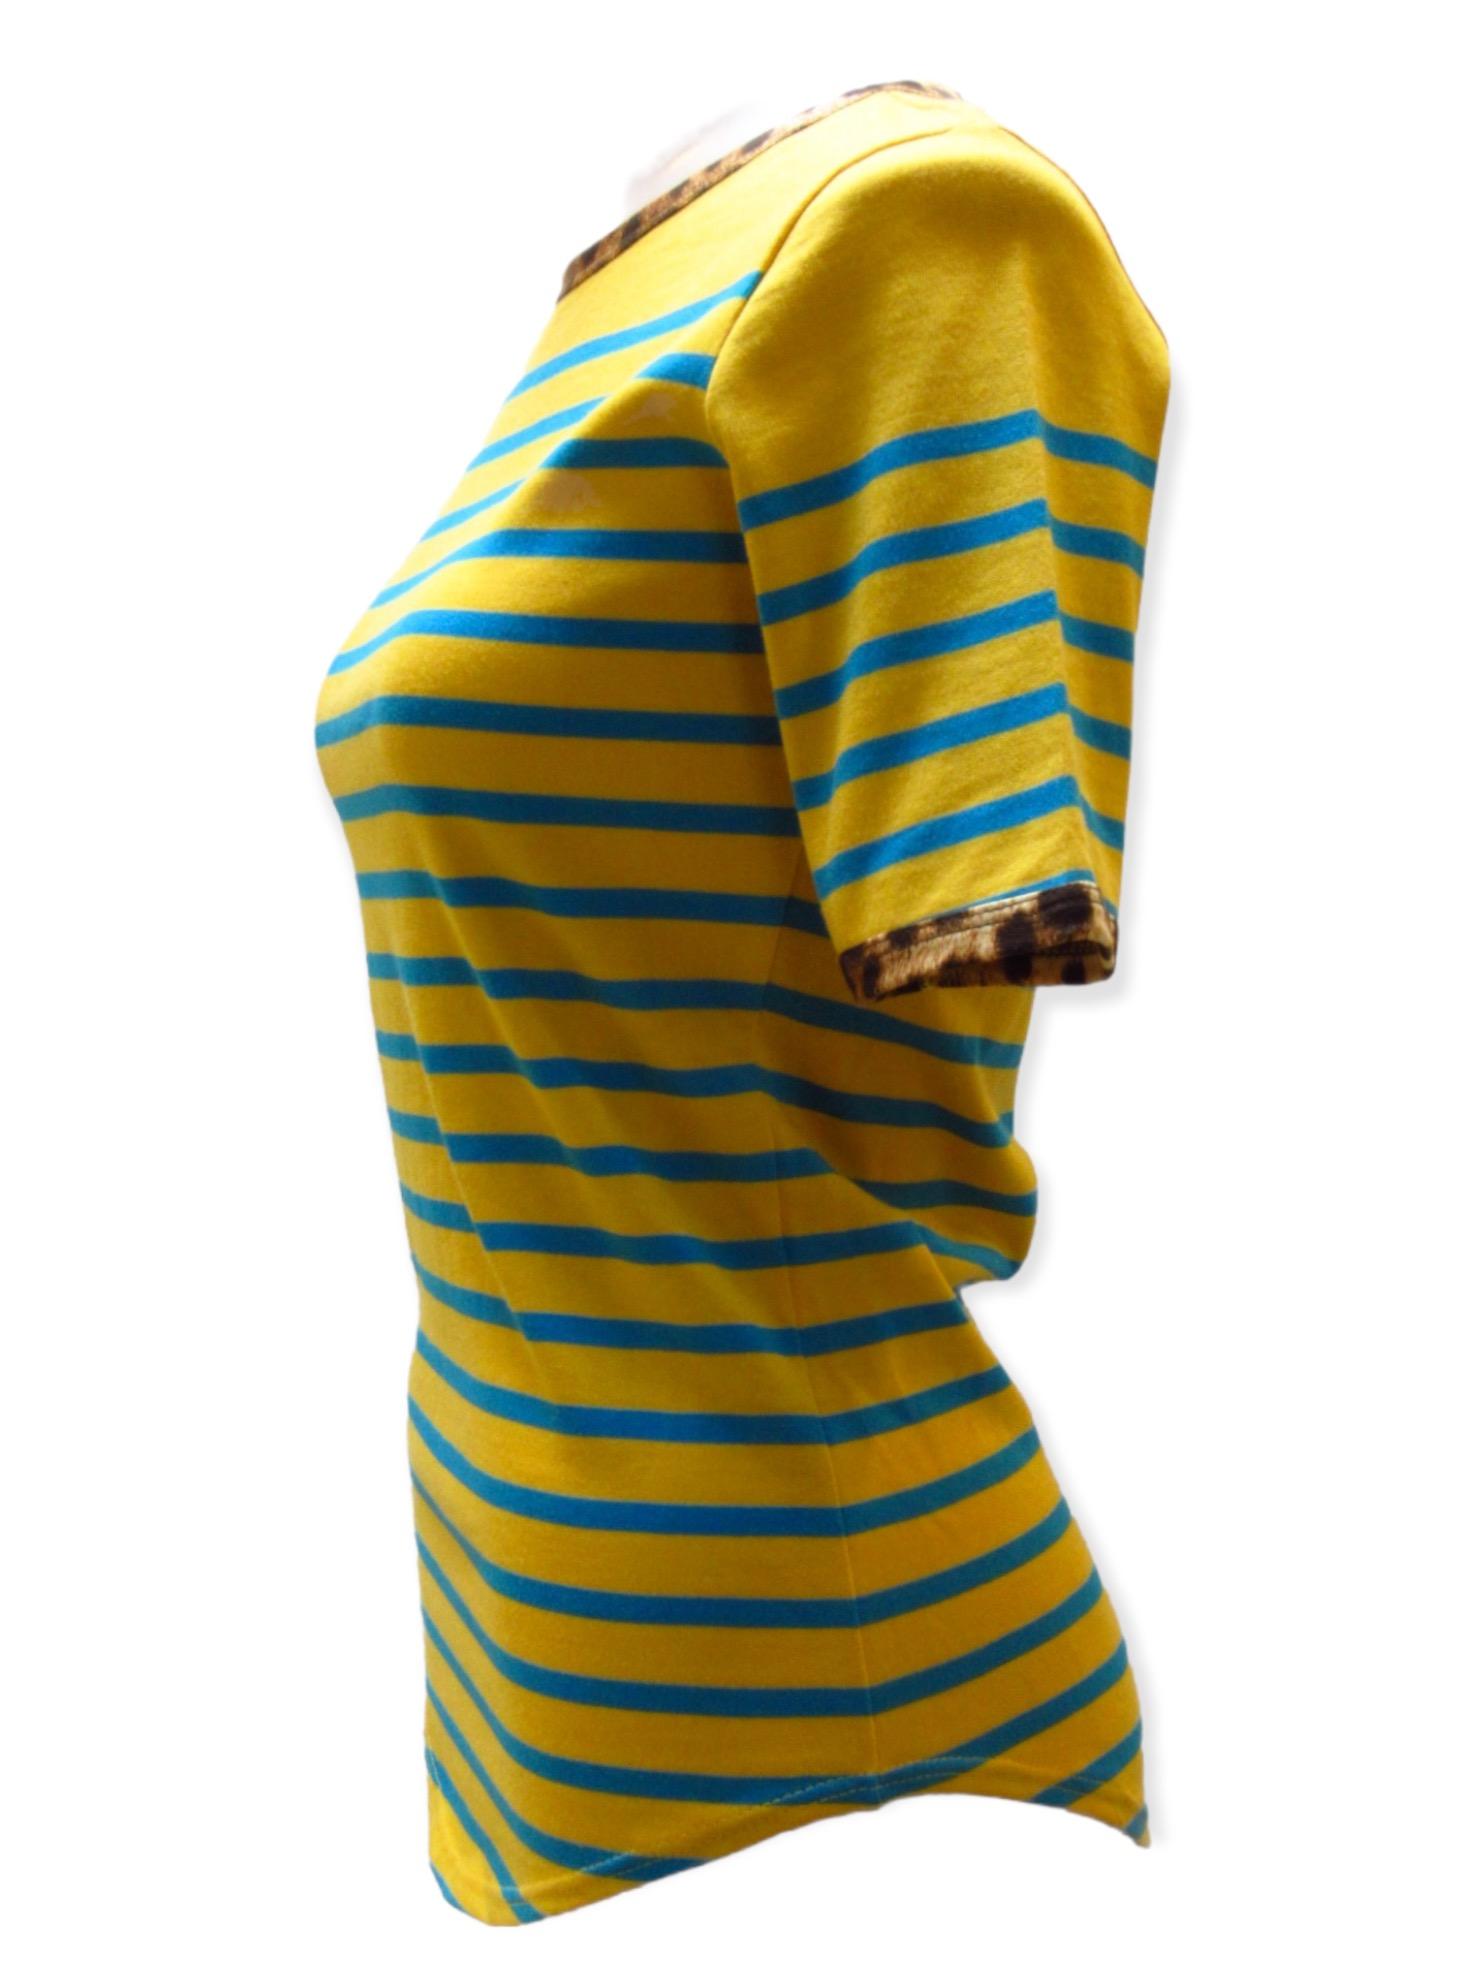 Jaune Jean-Paul Gaultier - T-shirt rayé jaune en vente